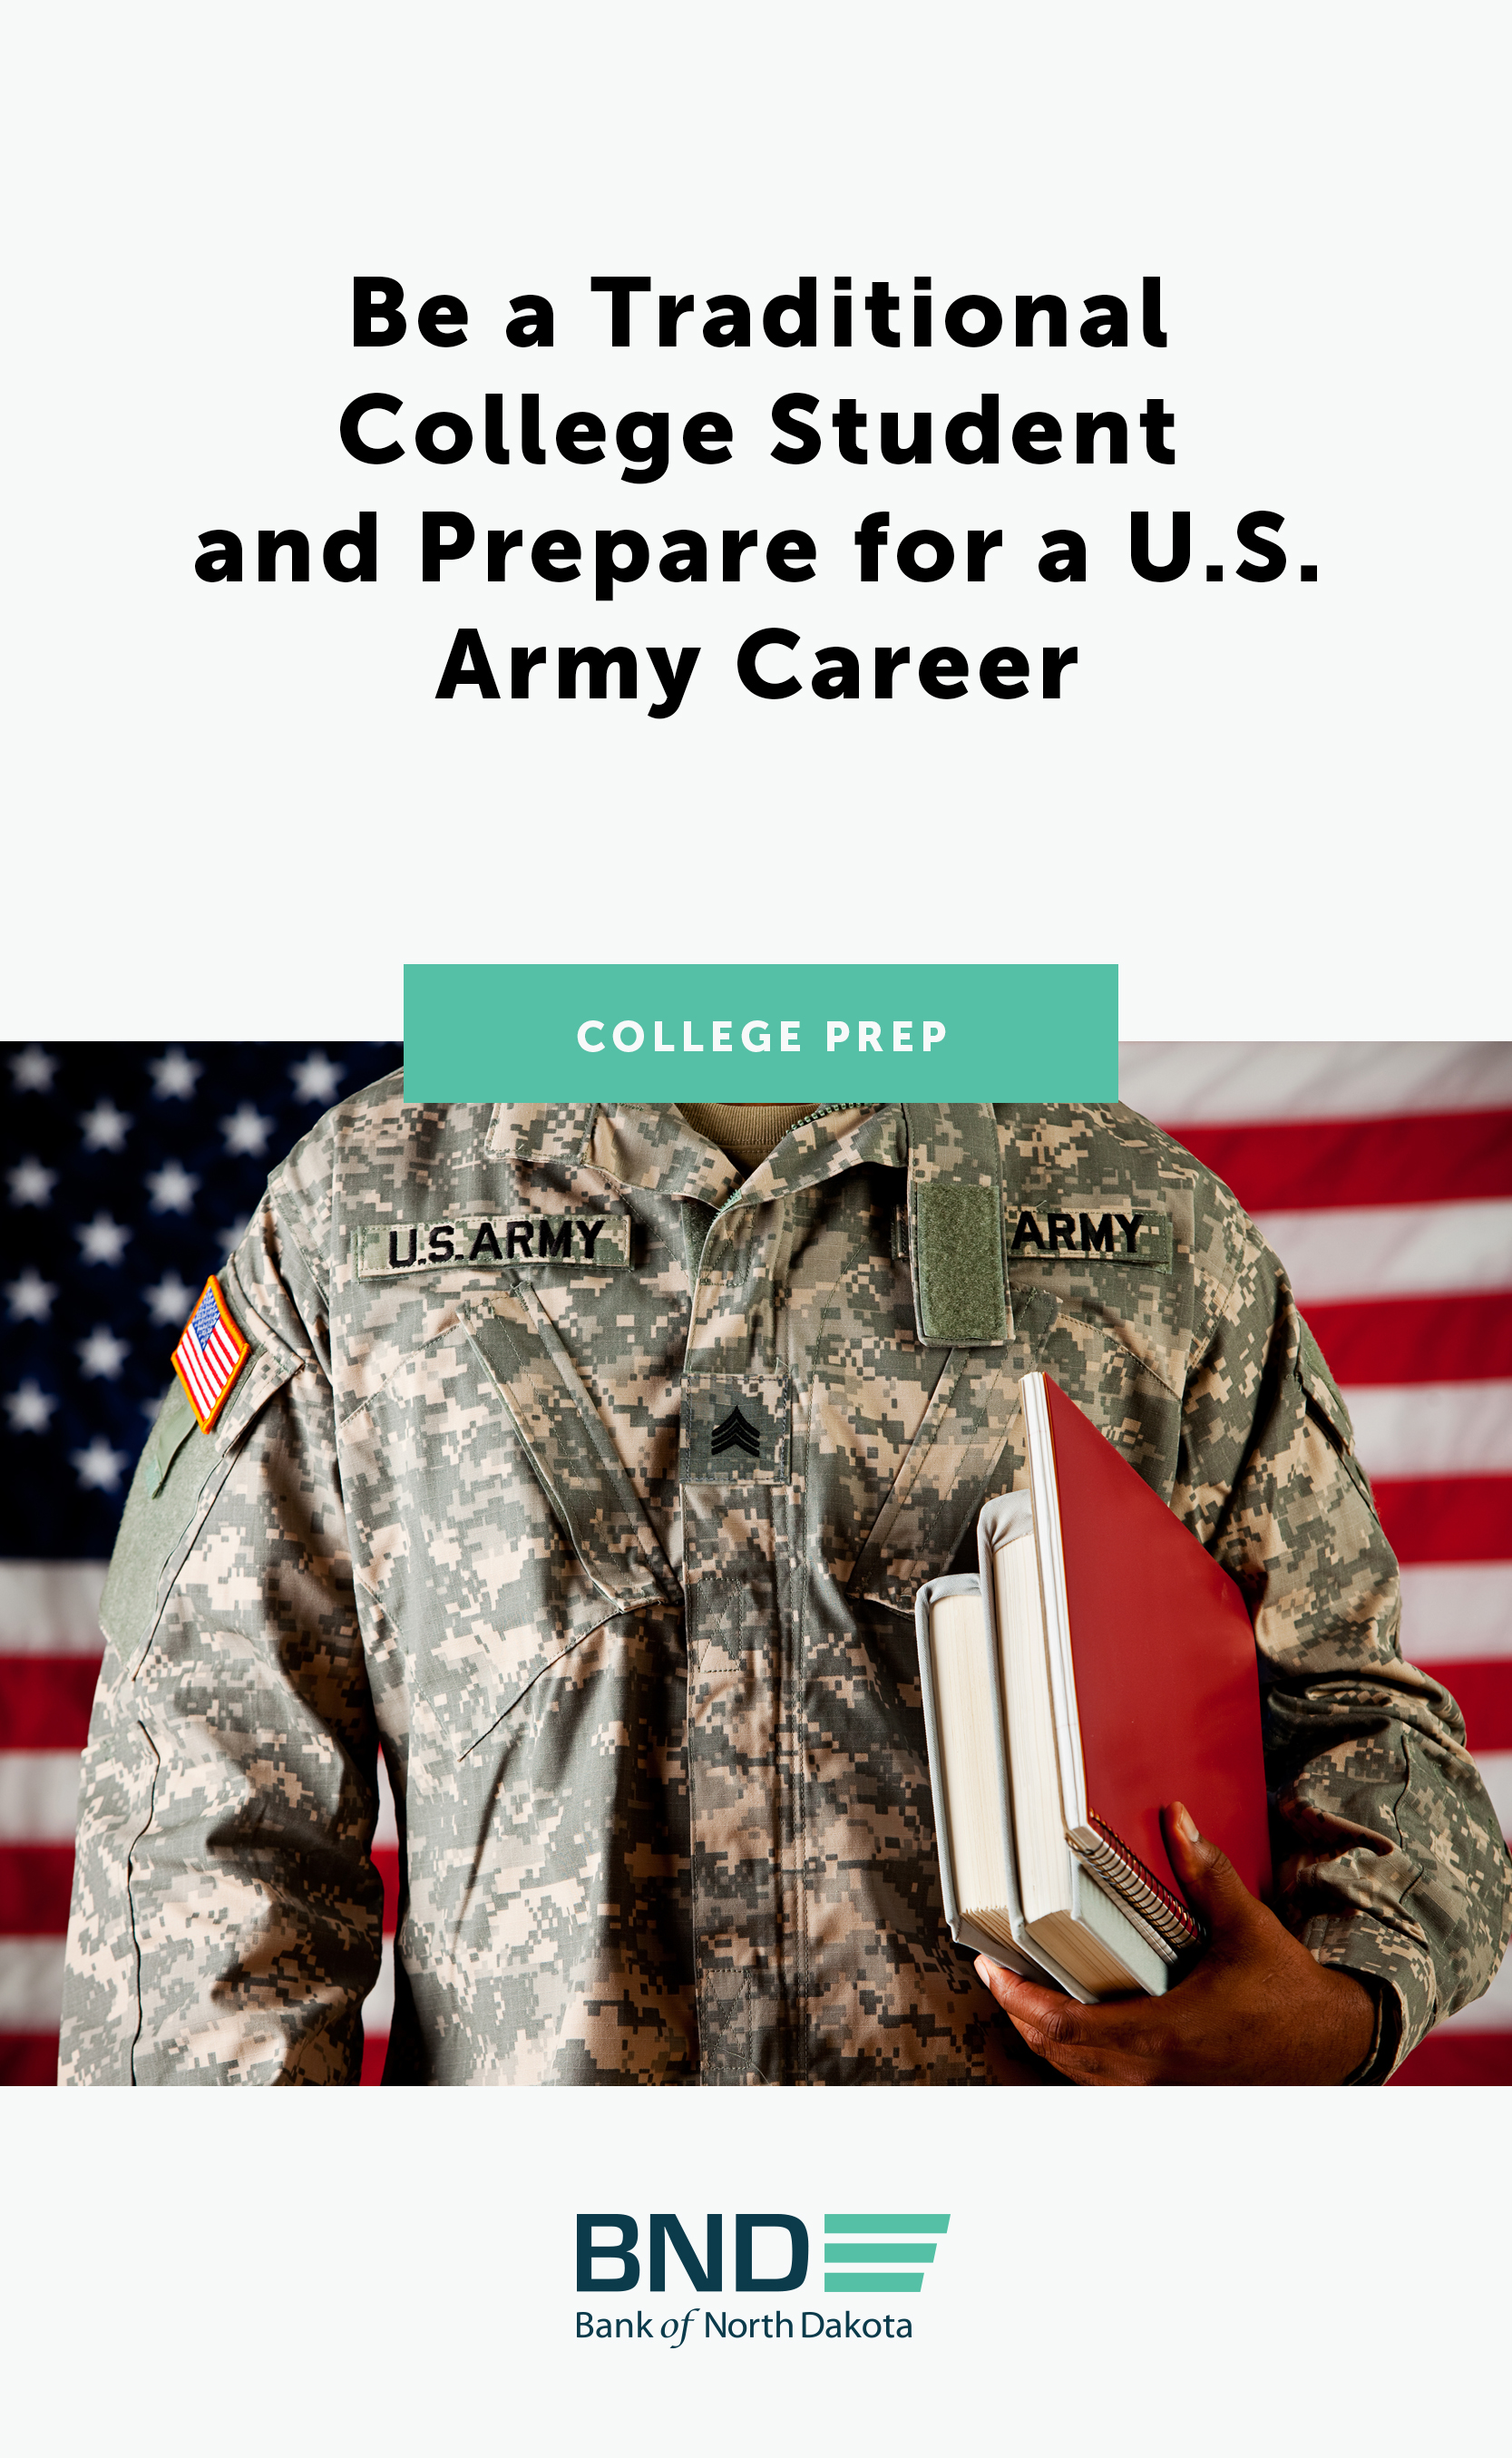 Classes to take to prepare for college